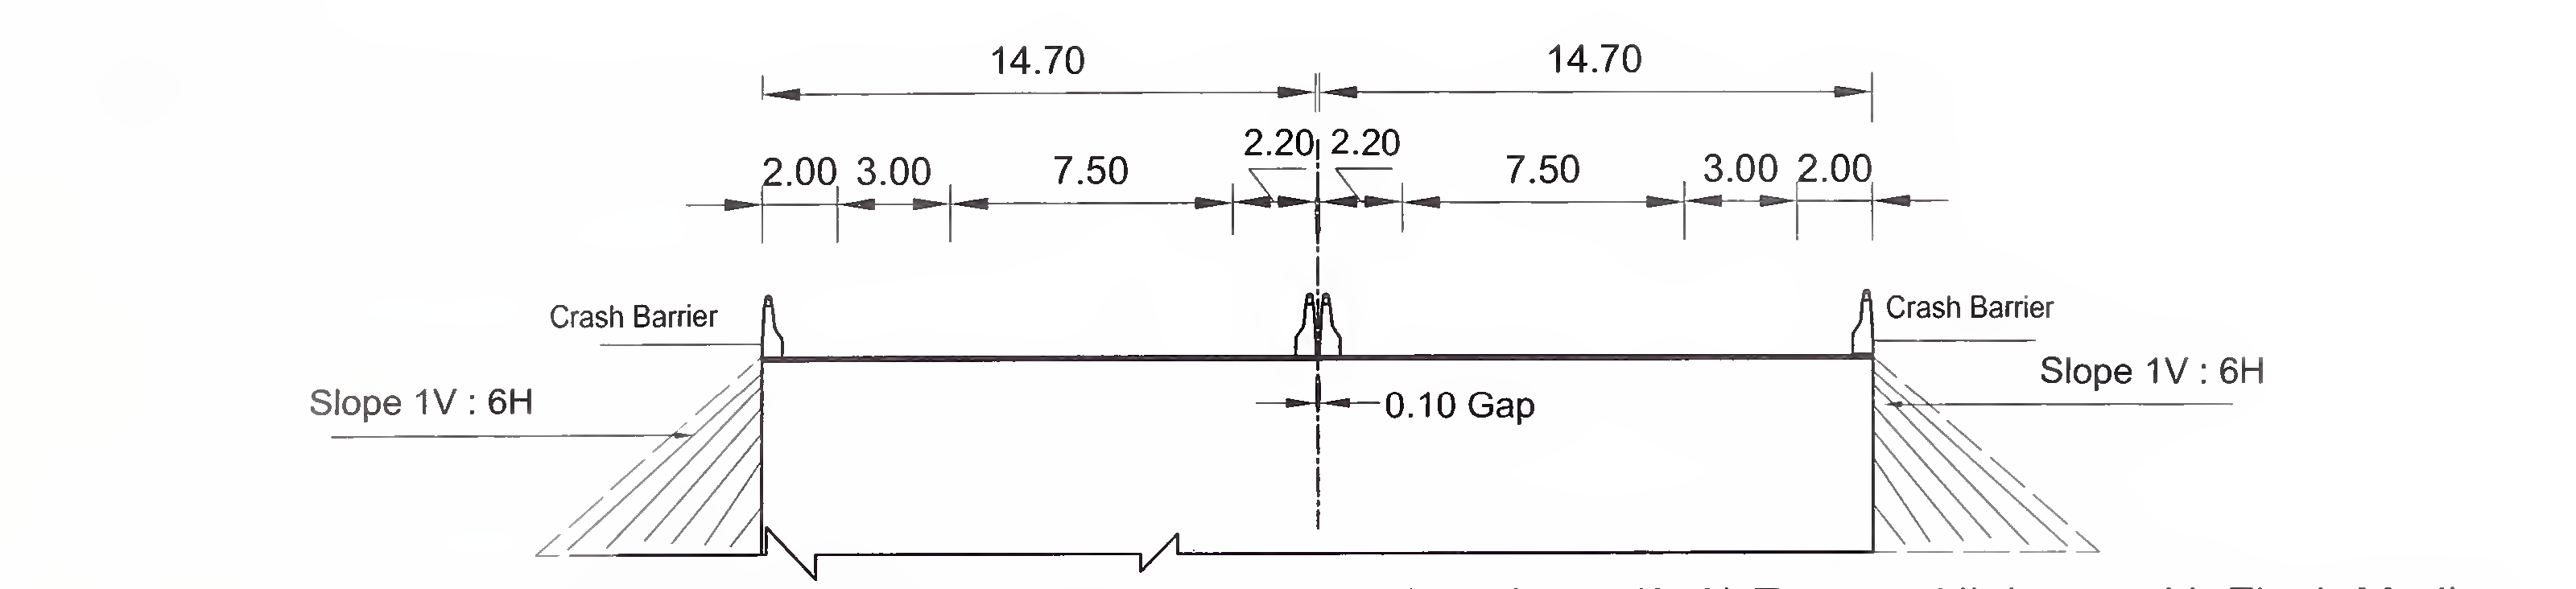 छवि 6.4 (ए) स्लैब और बॉक्स प्रकार के विशिष्ट क्रॉस-सेक्शन के लिए 4-लेन (2 × 2) फ्लश मेडियन के साथ एक्सप्रेस हाईवे